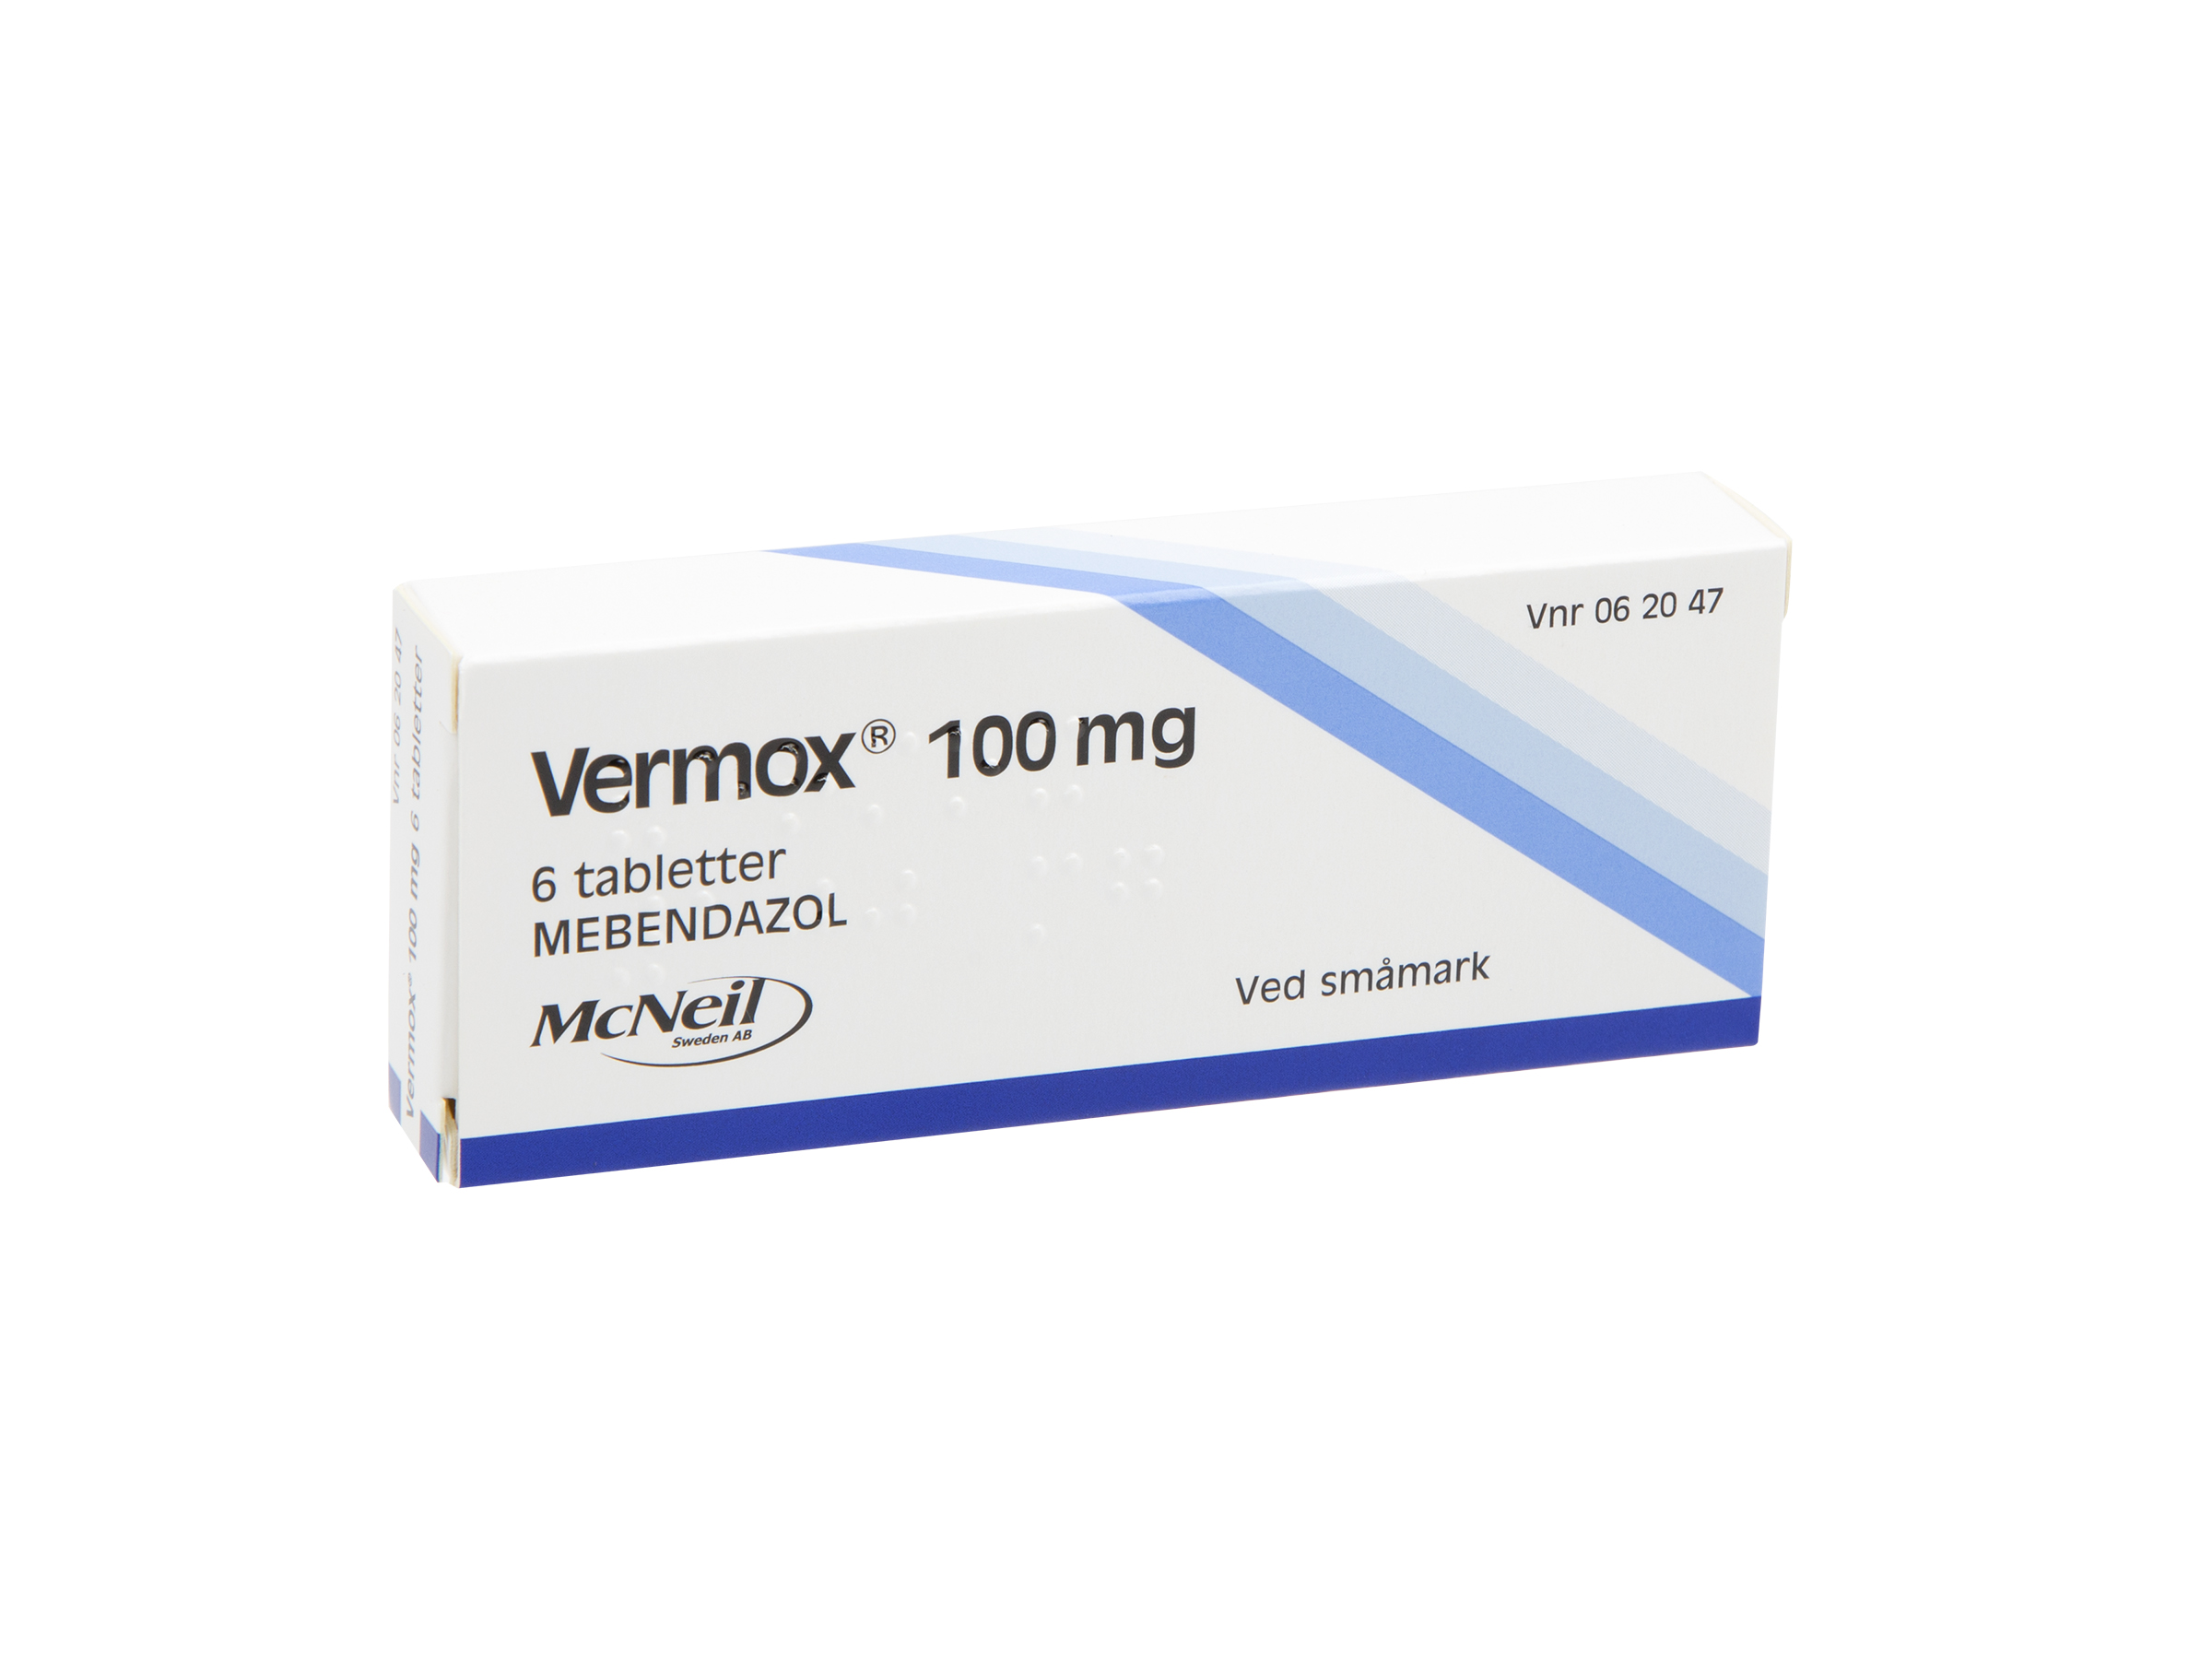 Vermox Tabletter 100mg, 6 stk. på brett